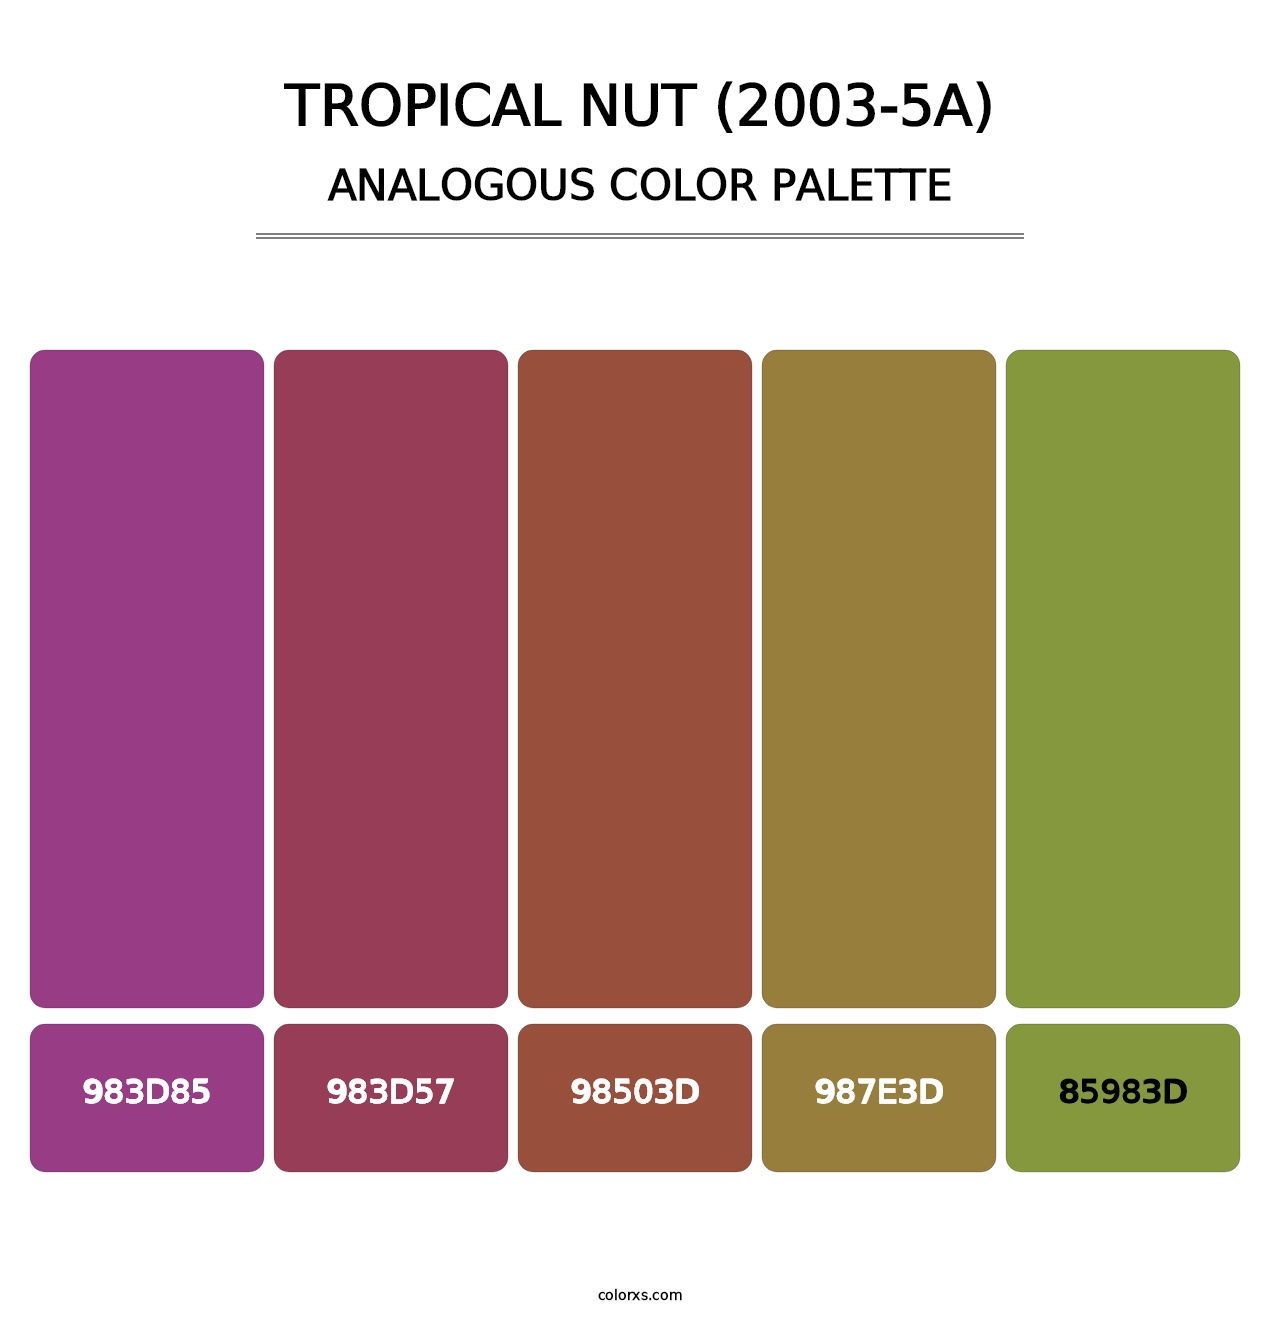 Tropical Nut (2003-5A) - Analogous Color Palette